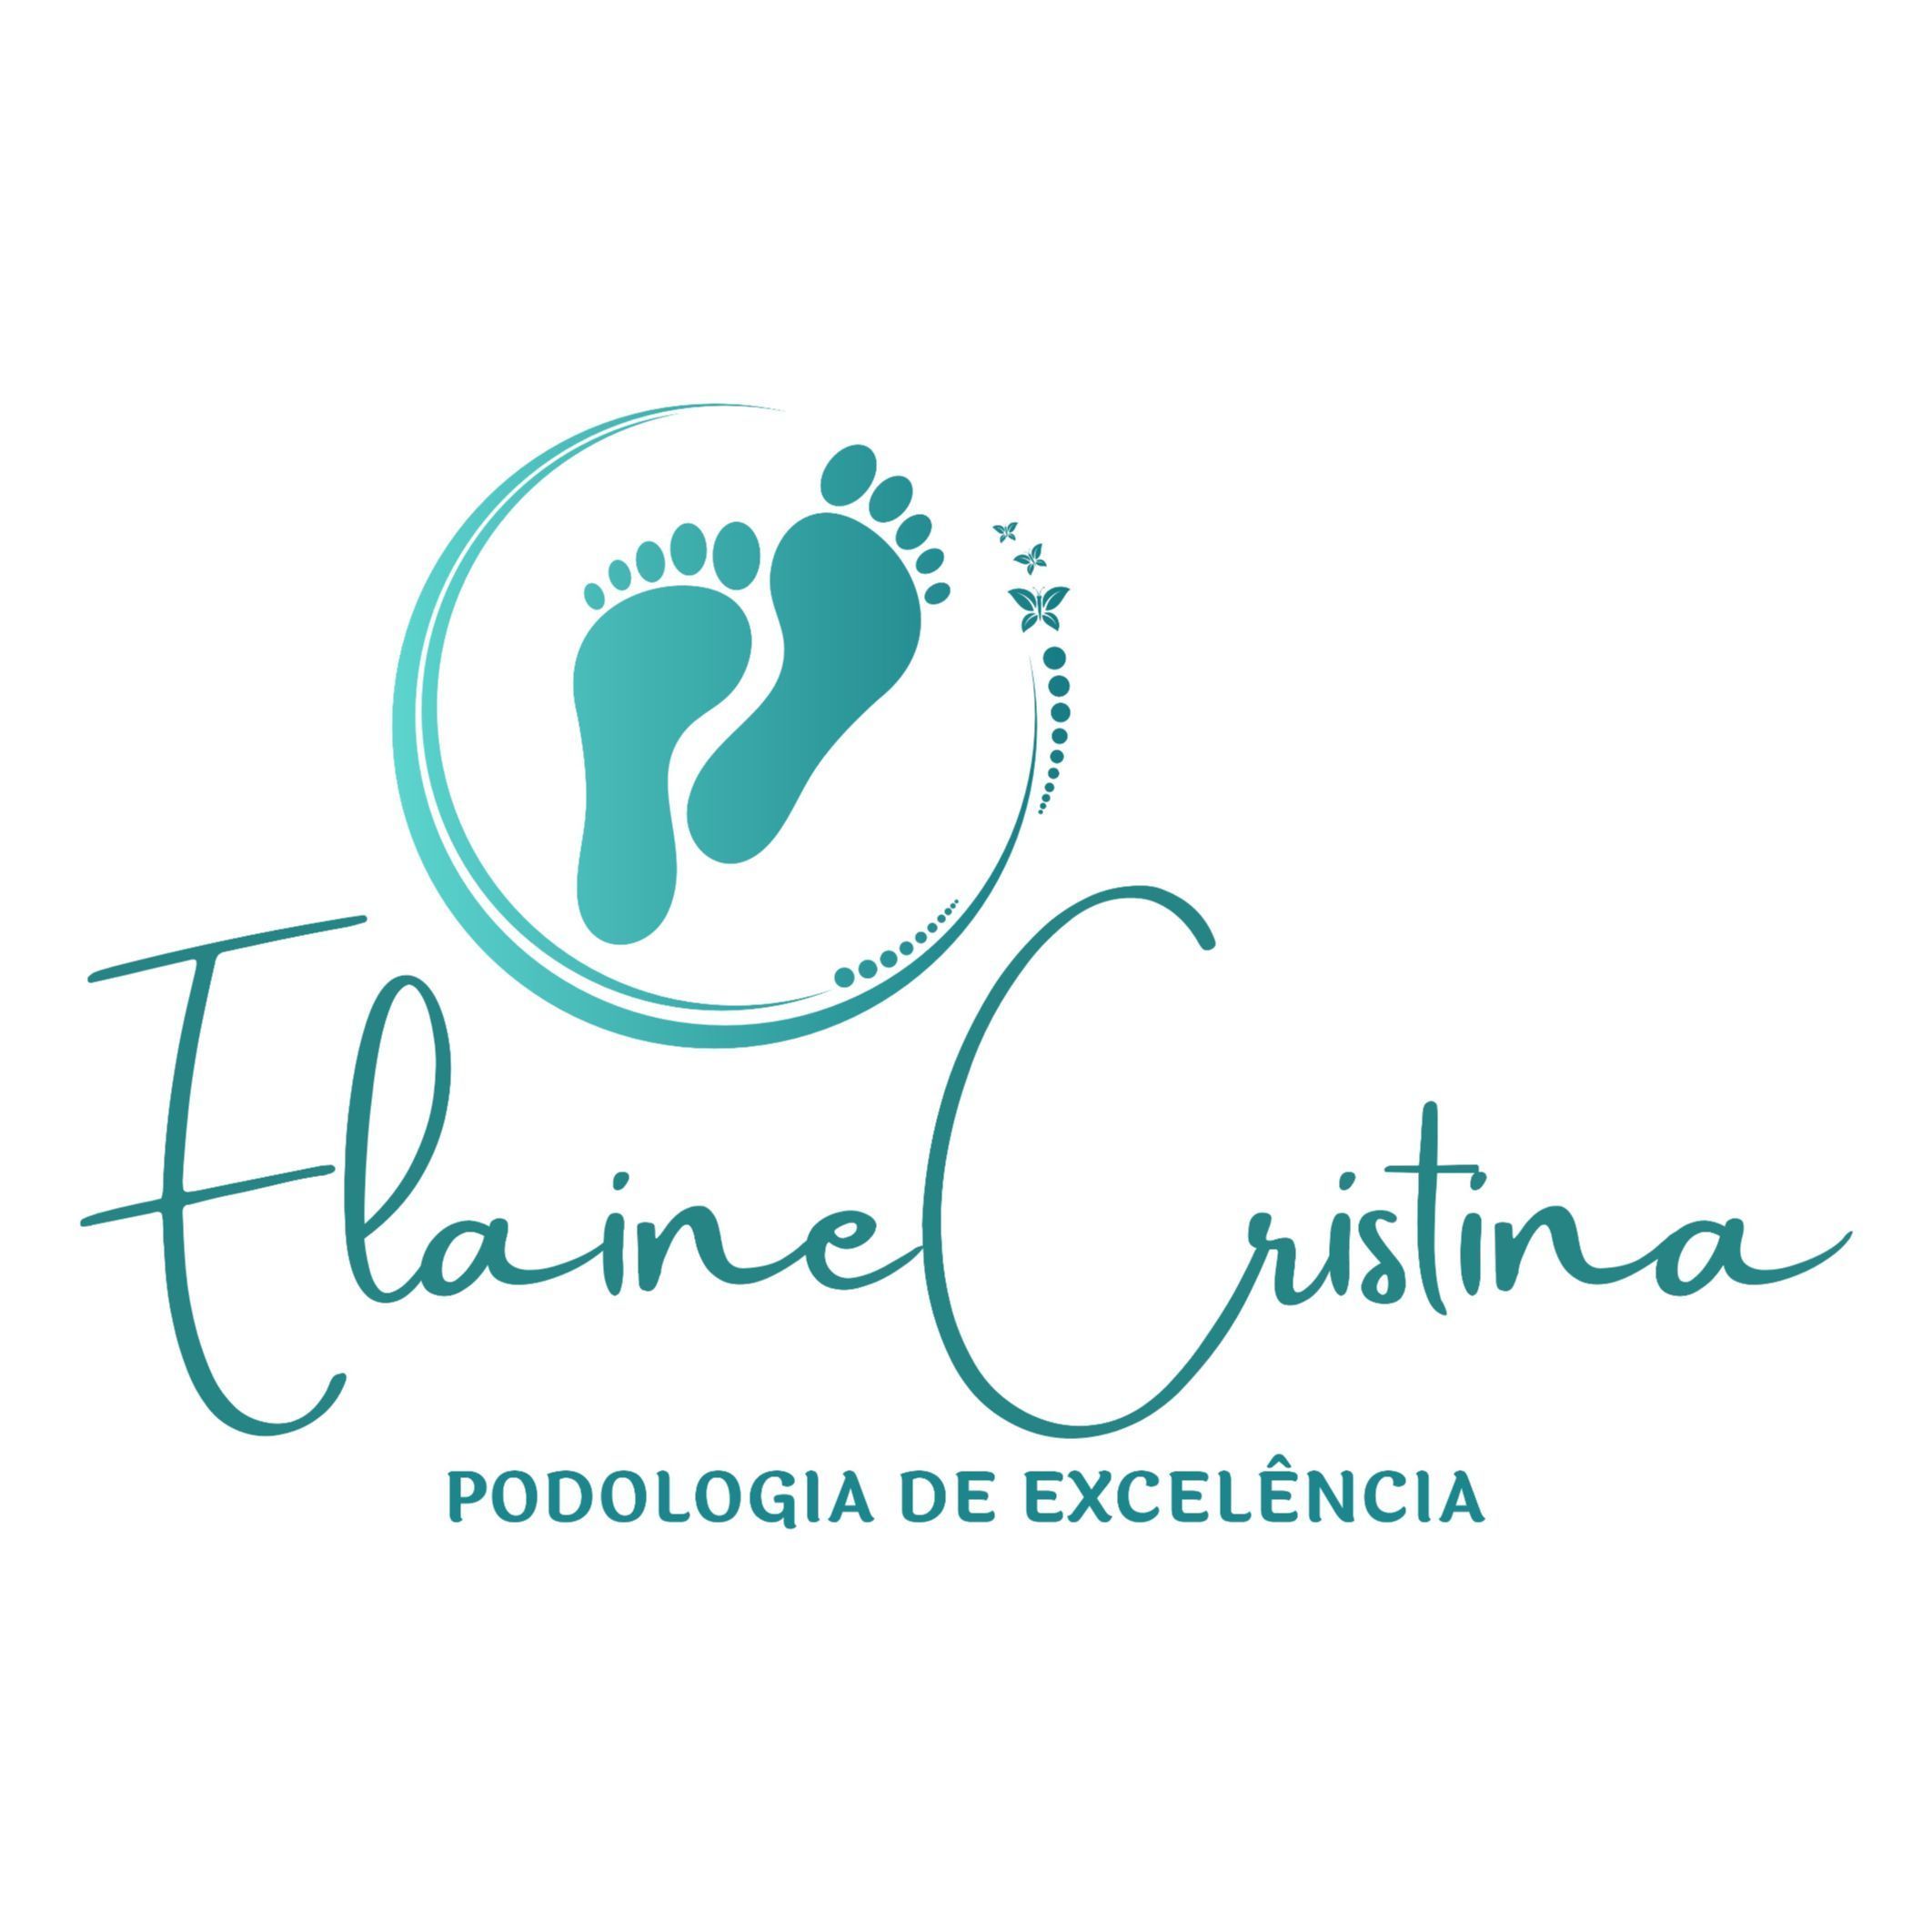 ELAINE CRISTINA PODOLOGIA, Rua da Timbaúba, 259, Centro Comercial Monte Verde, 88032-310, Florianópolis